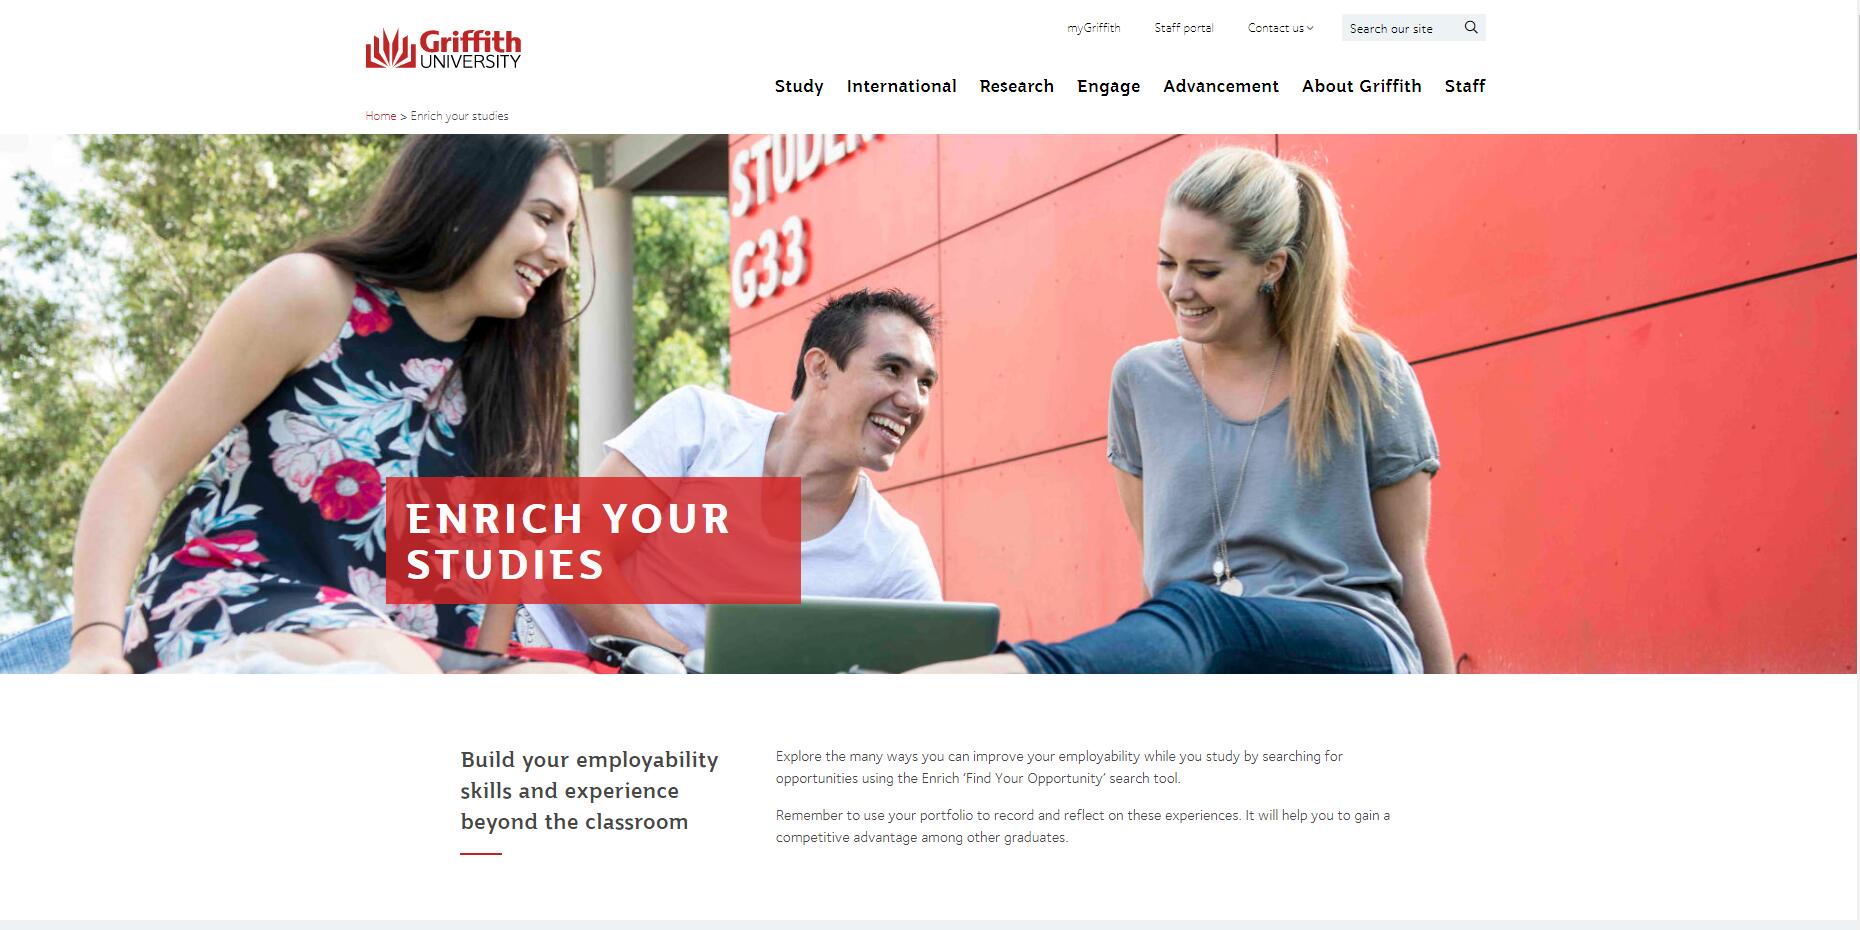 Enrich your studies - Griffith University